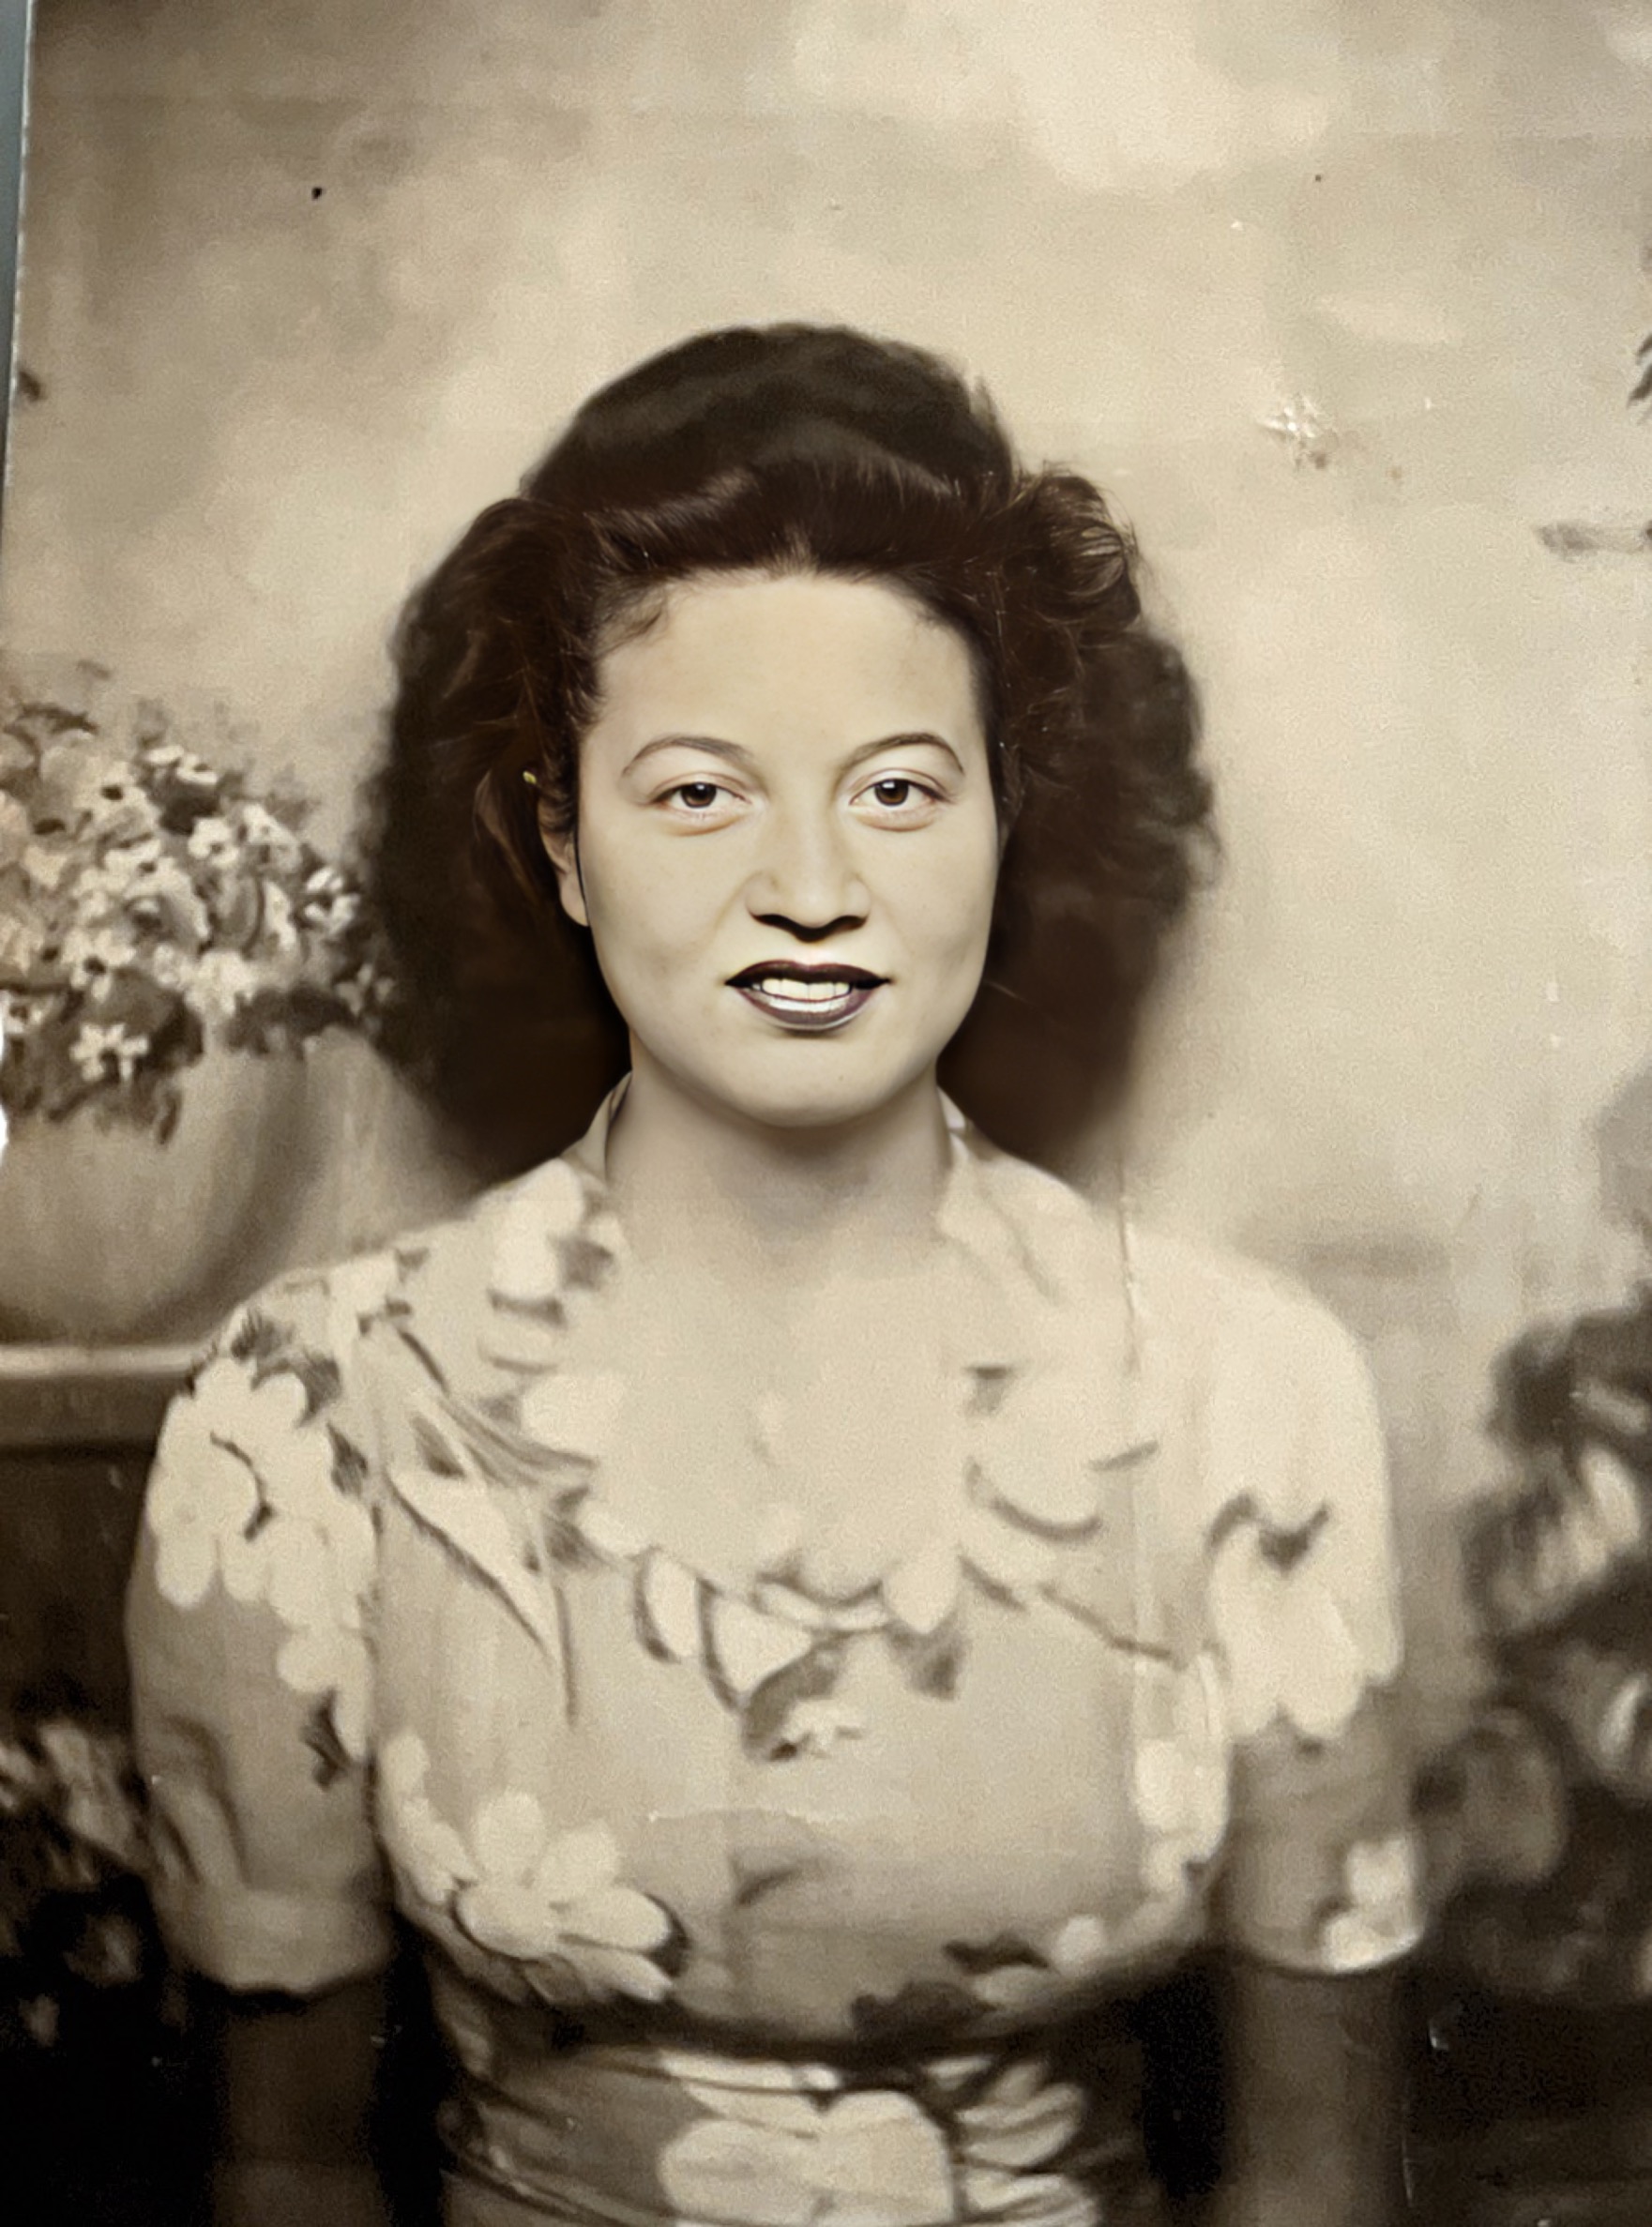 Our mother Carmen Olmeda Harbison 1940’s